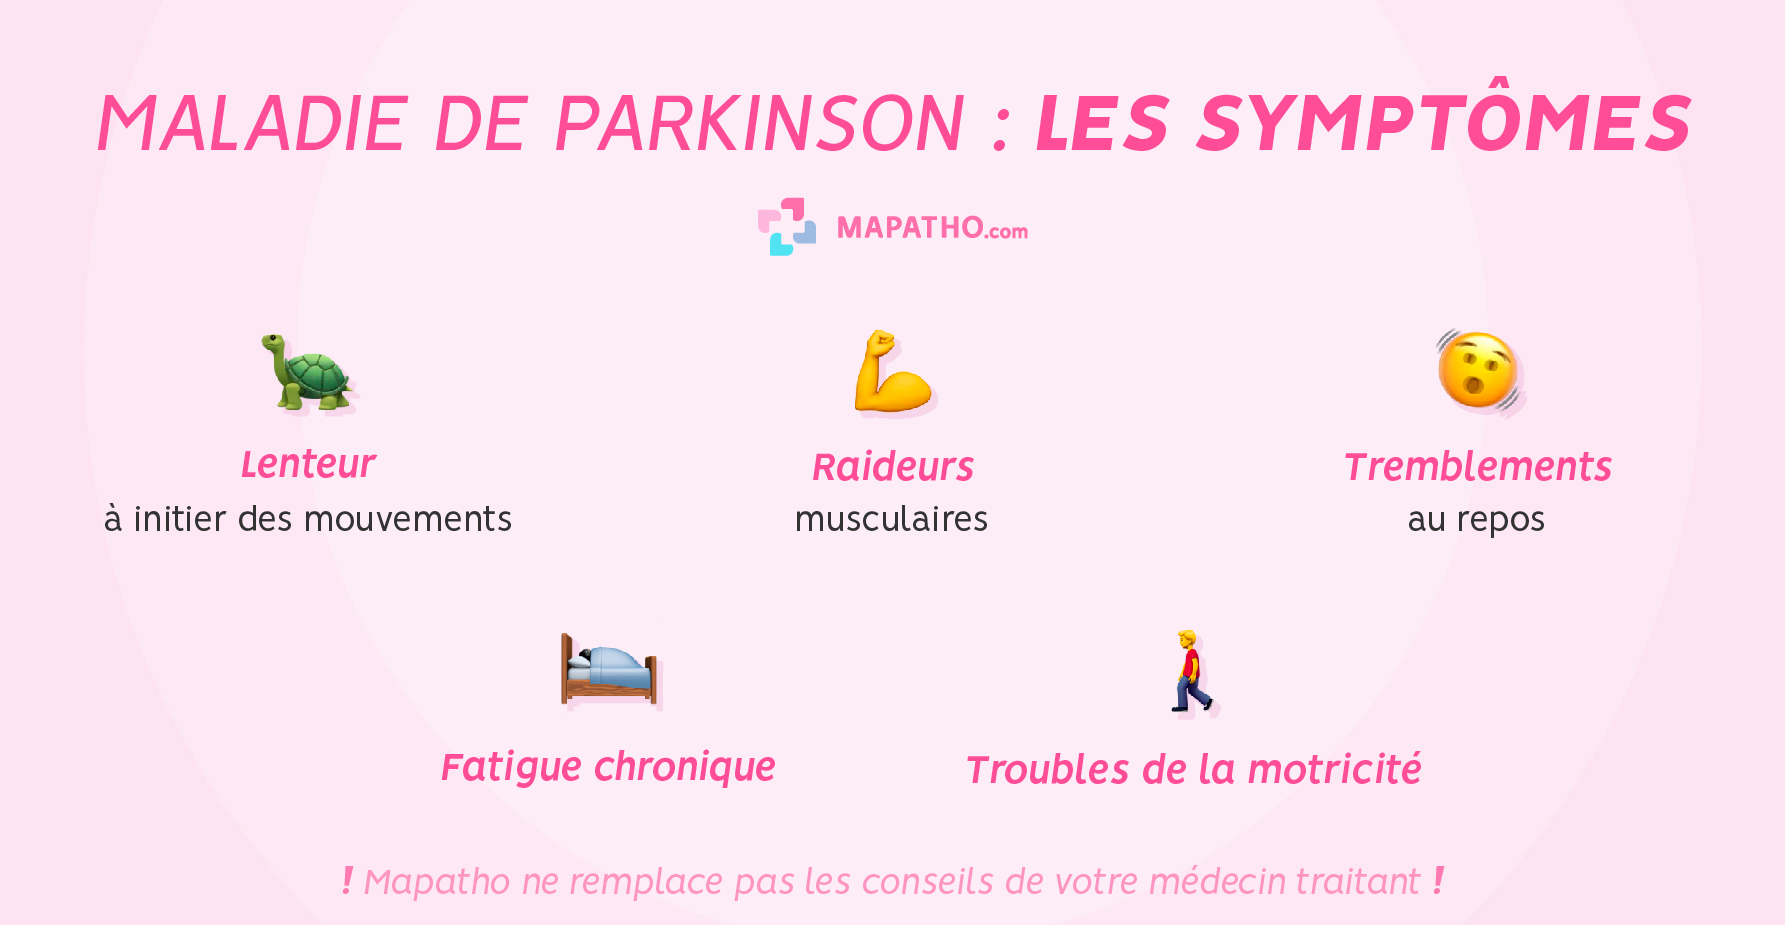 Les symptômes de la maladie de parkinson 